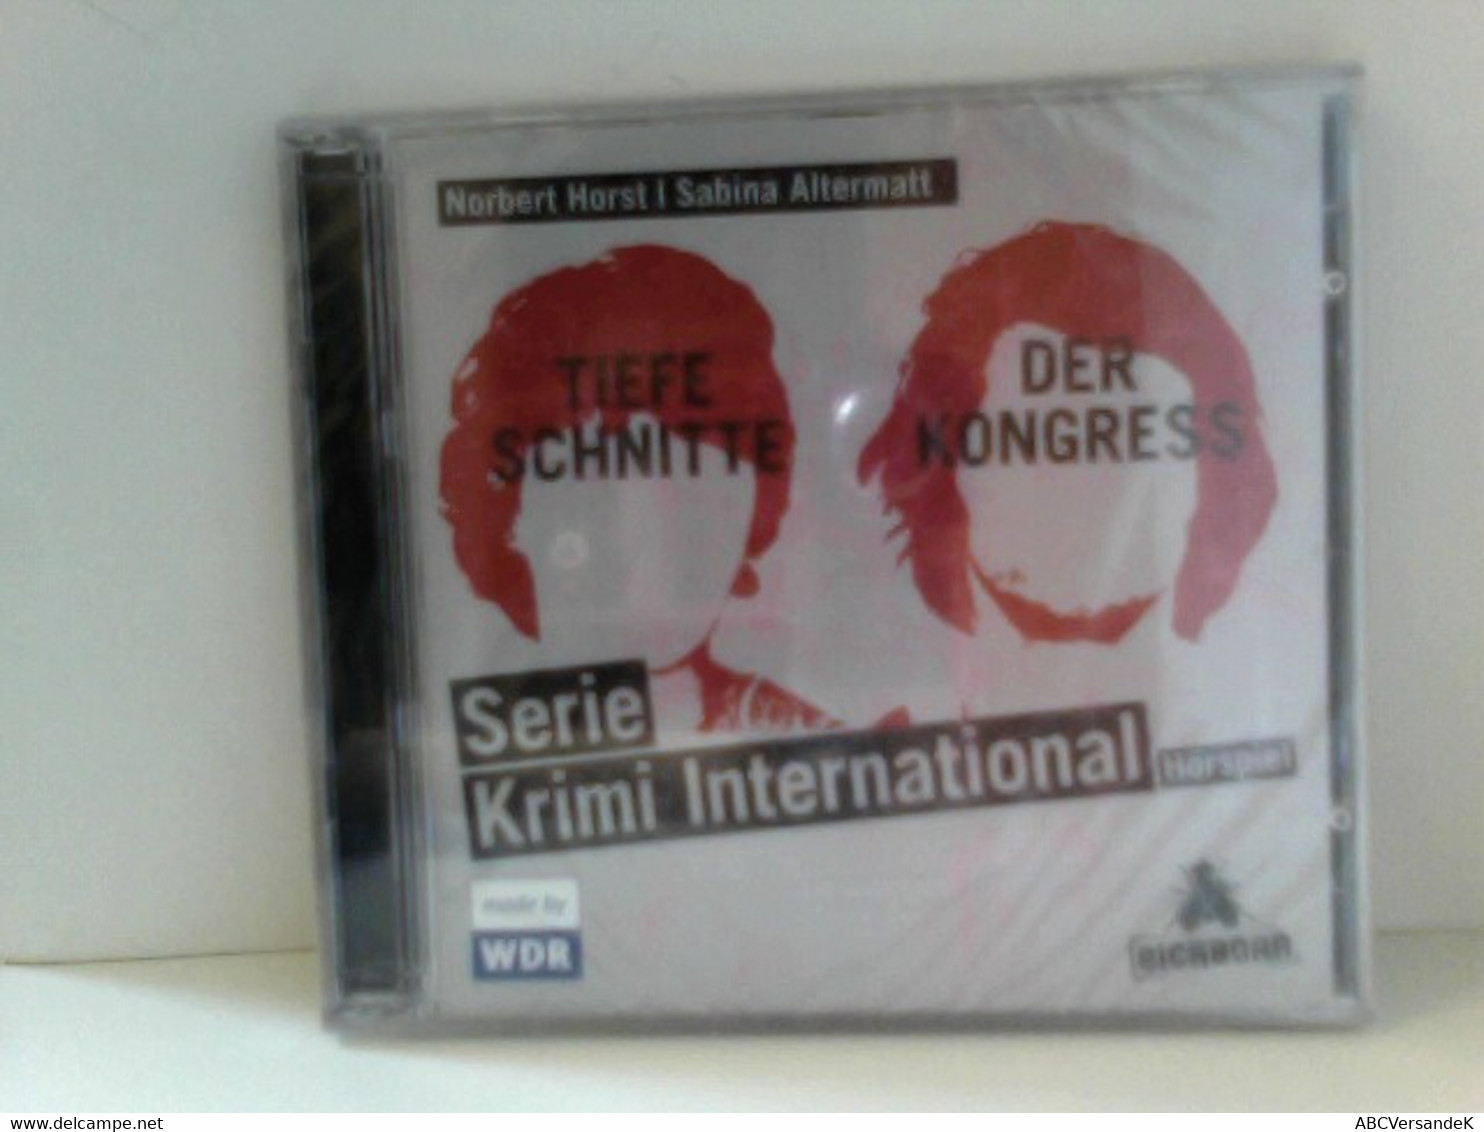 Serie Krimi International 3 Und 4: Tiefe Schnitte / Der Kongress - CDs